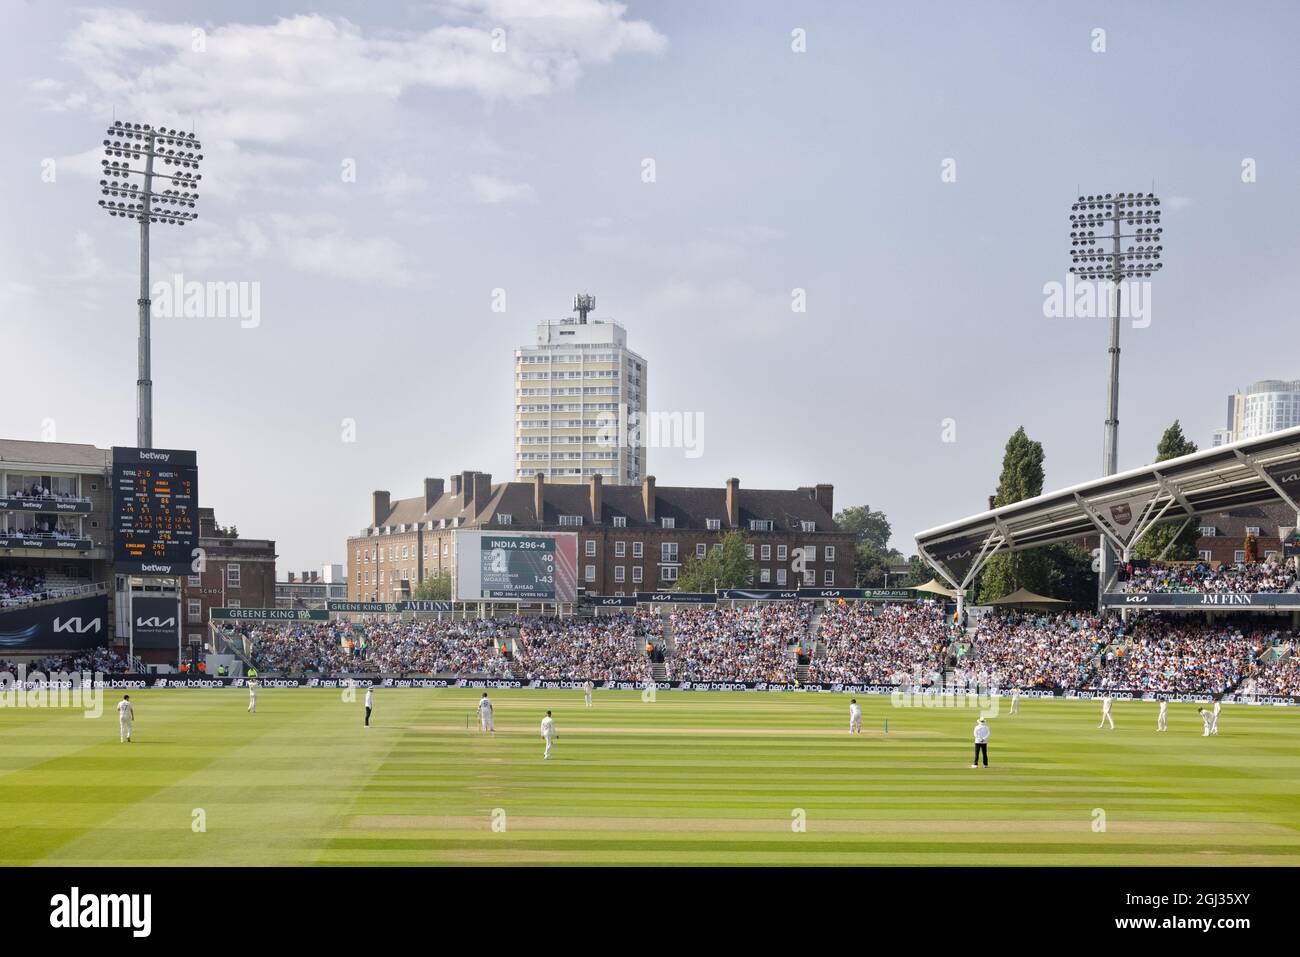 Le cricket de l'Angleterre; le terrain de cricket ovale, ou Kia Oval, 2021 juillet, match d'essai Angleterre/Inde, regardé par des foules de fans en été, The Oval, Londres UK Banque D'Images